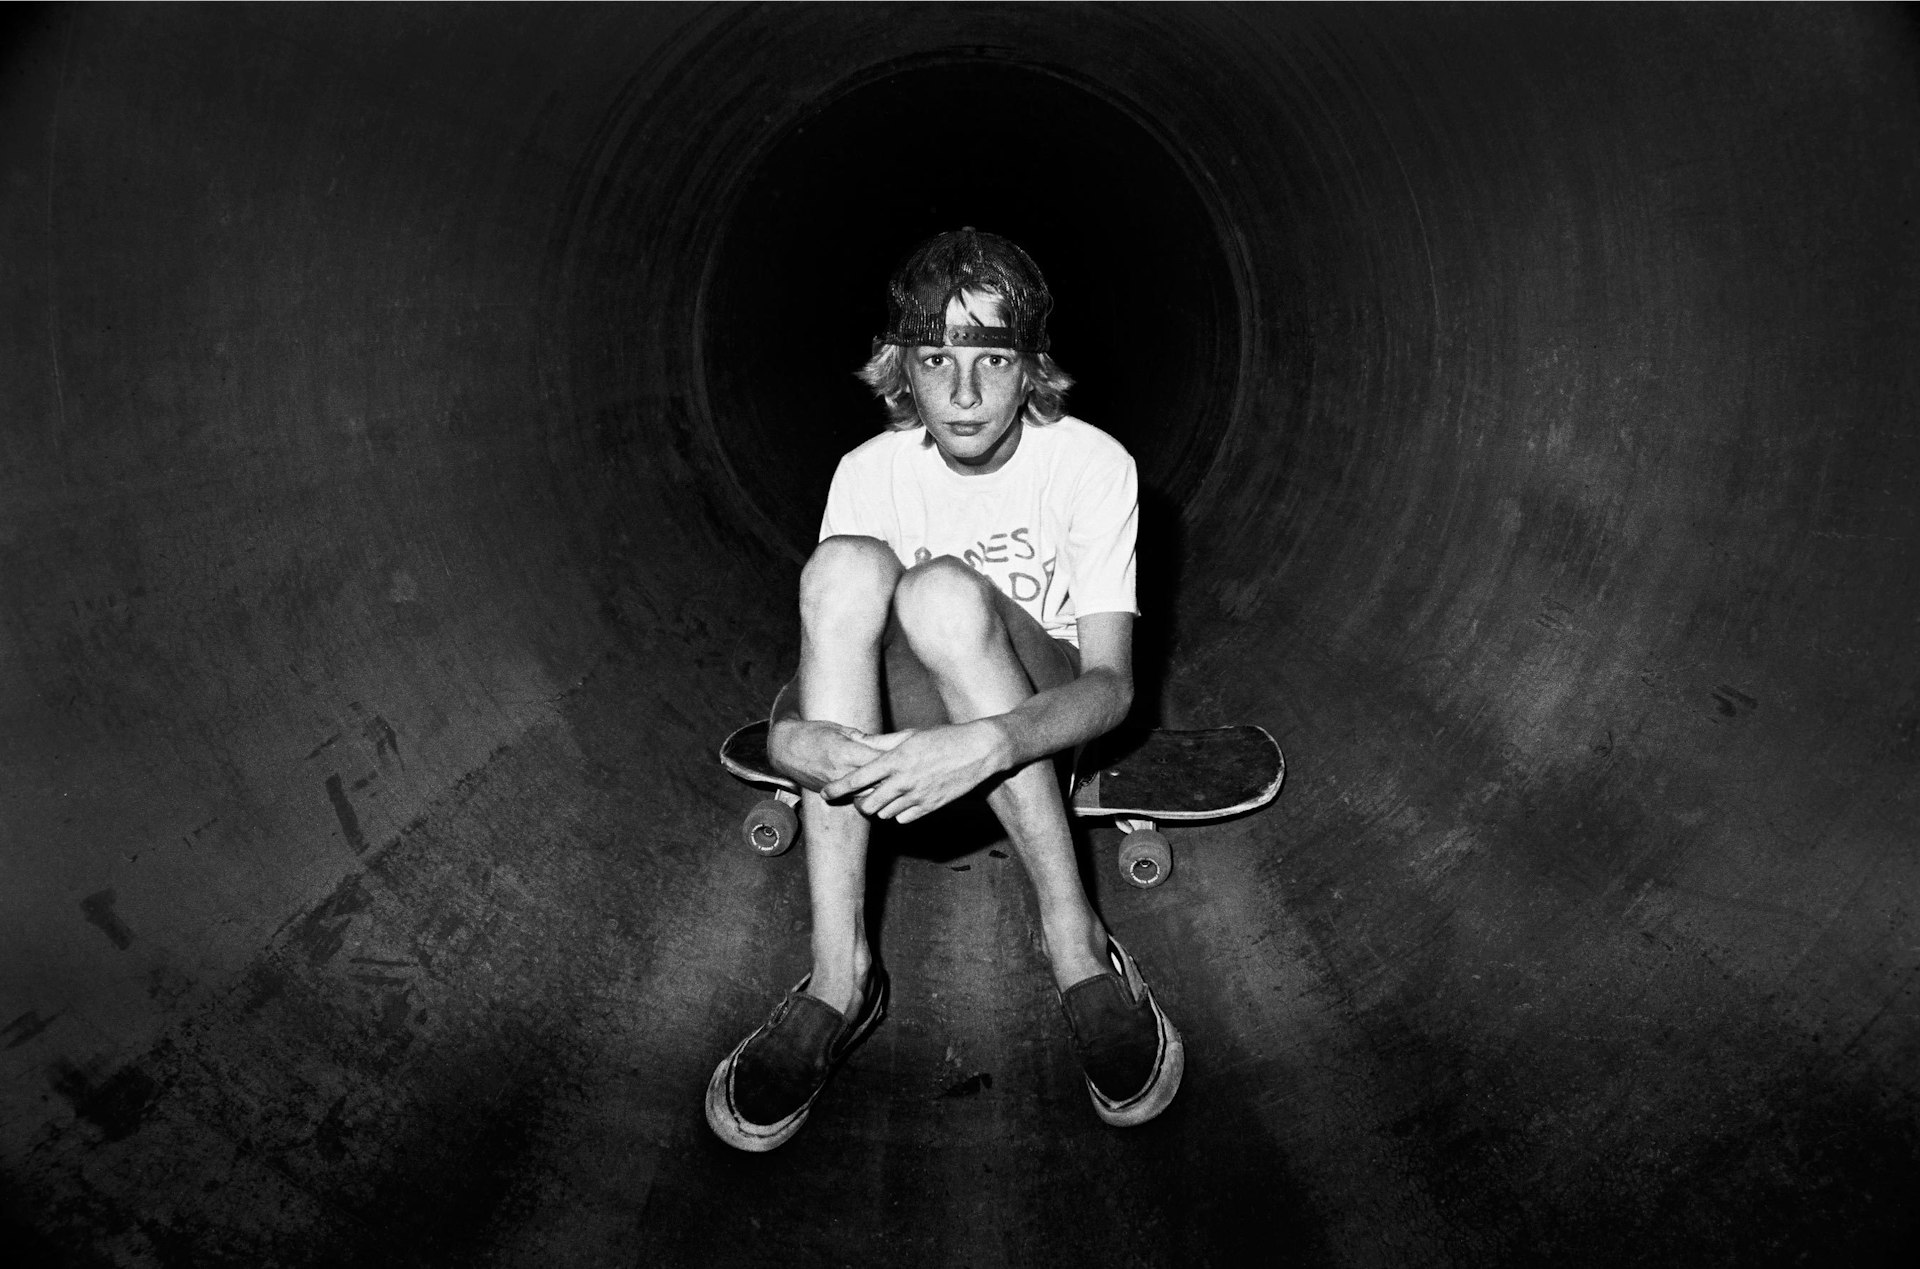 The radical career of skate photographer J. Grant Brittain